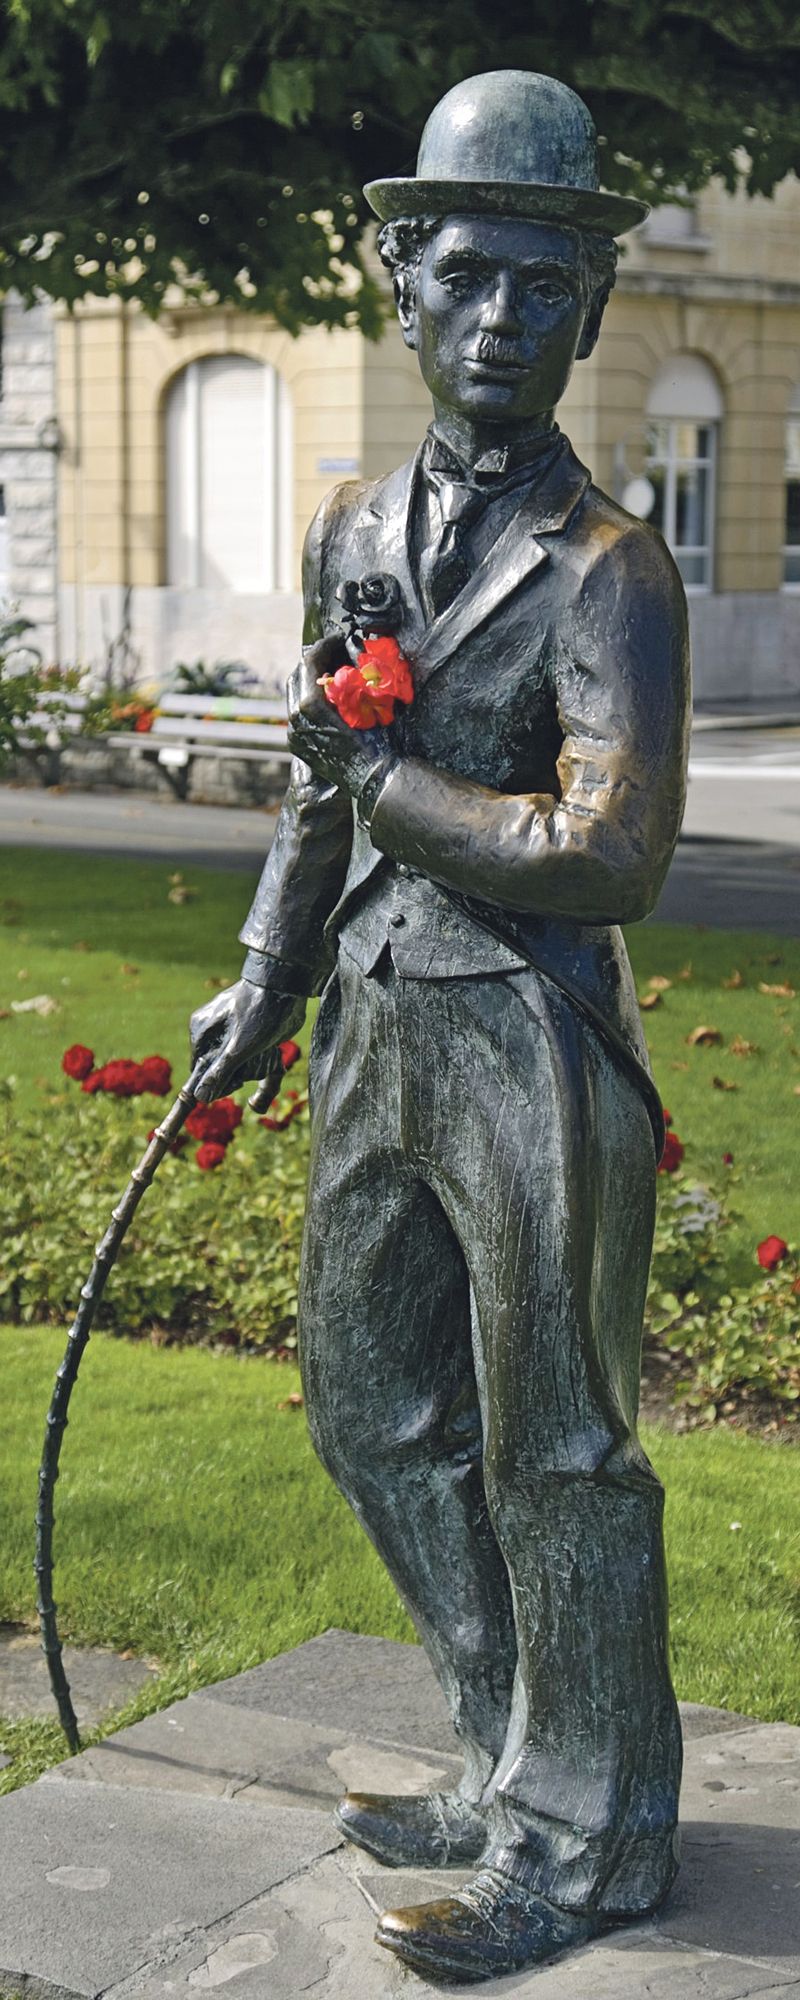 Na promenádě na břehu jezera se nachází socha Charlese Chaplina.